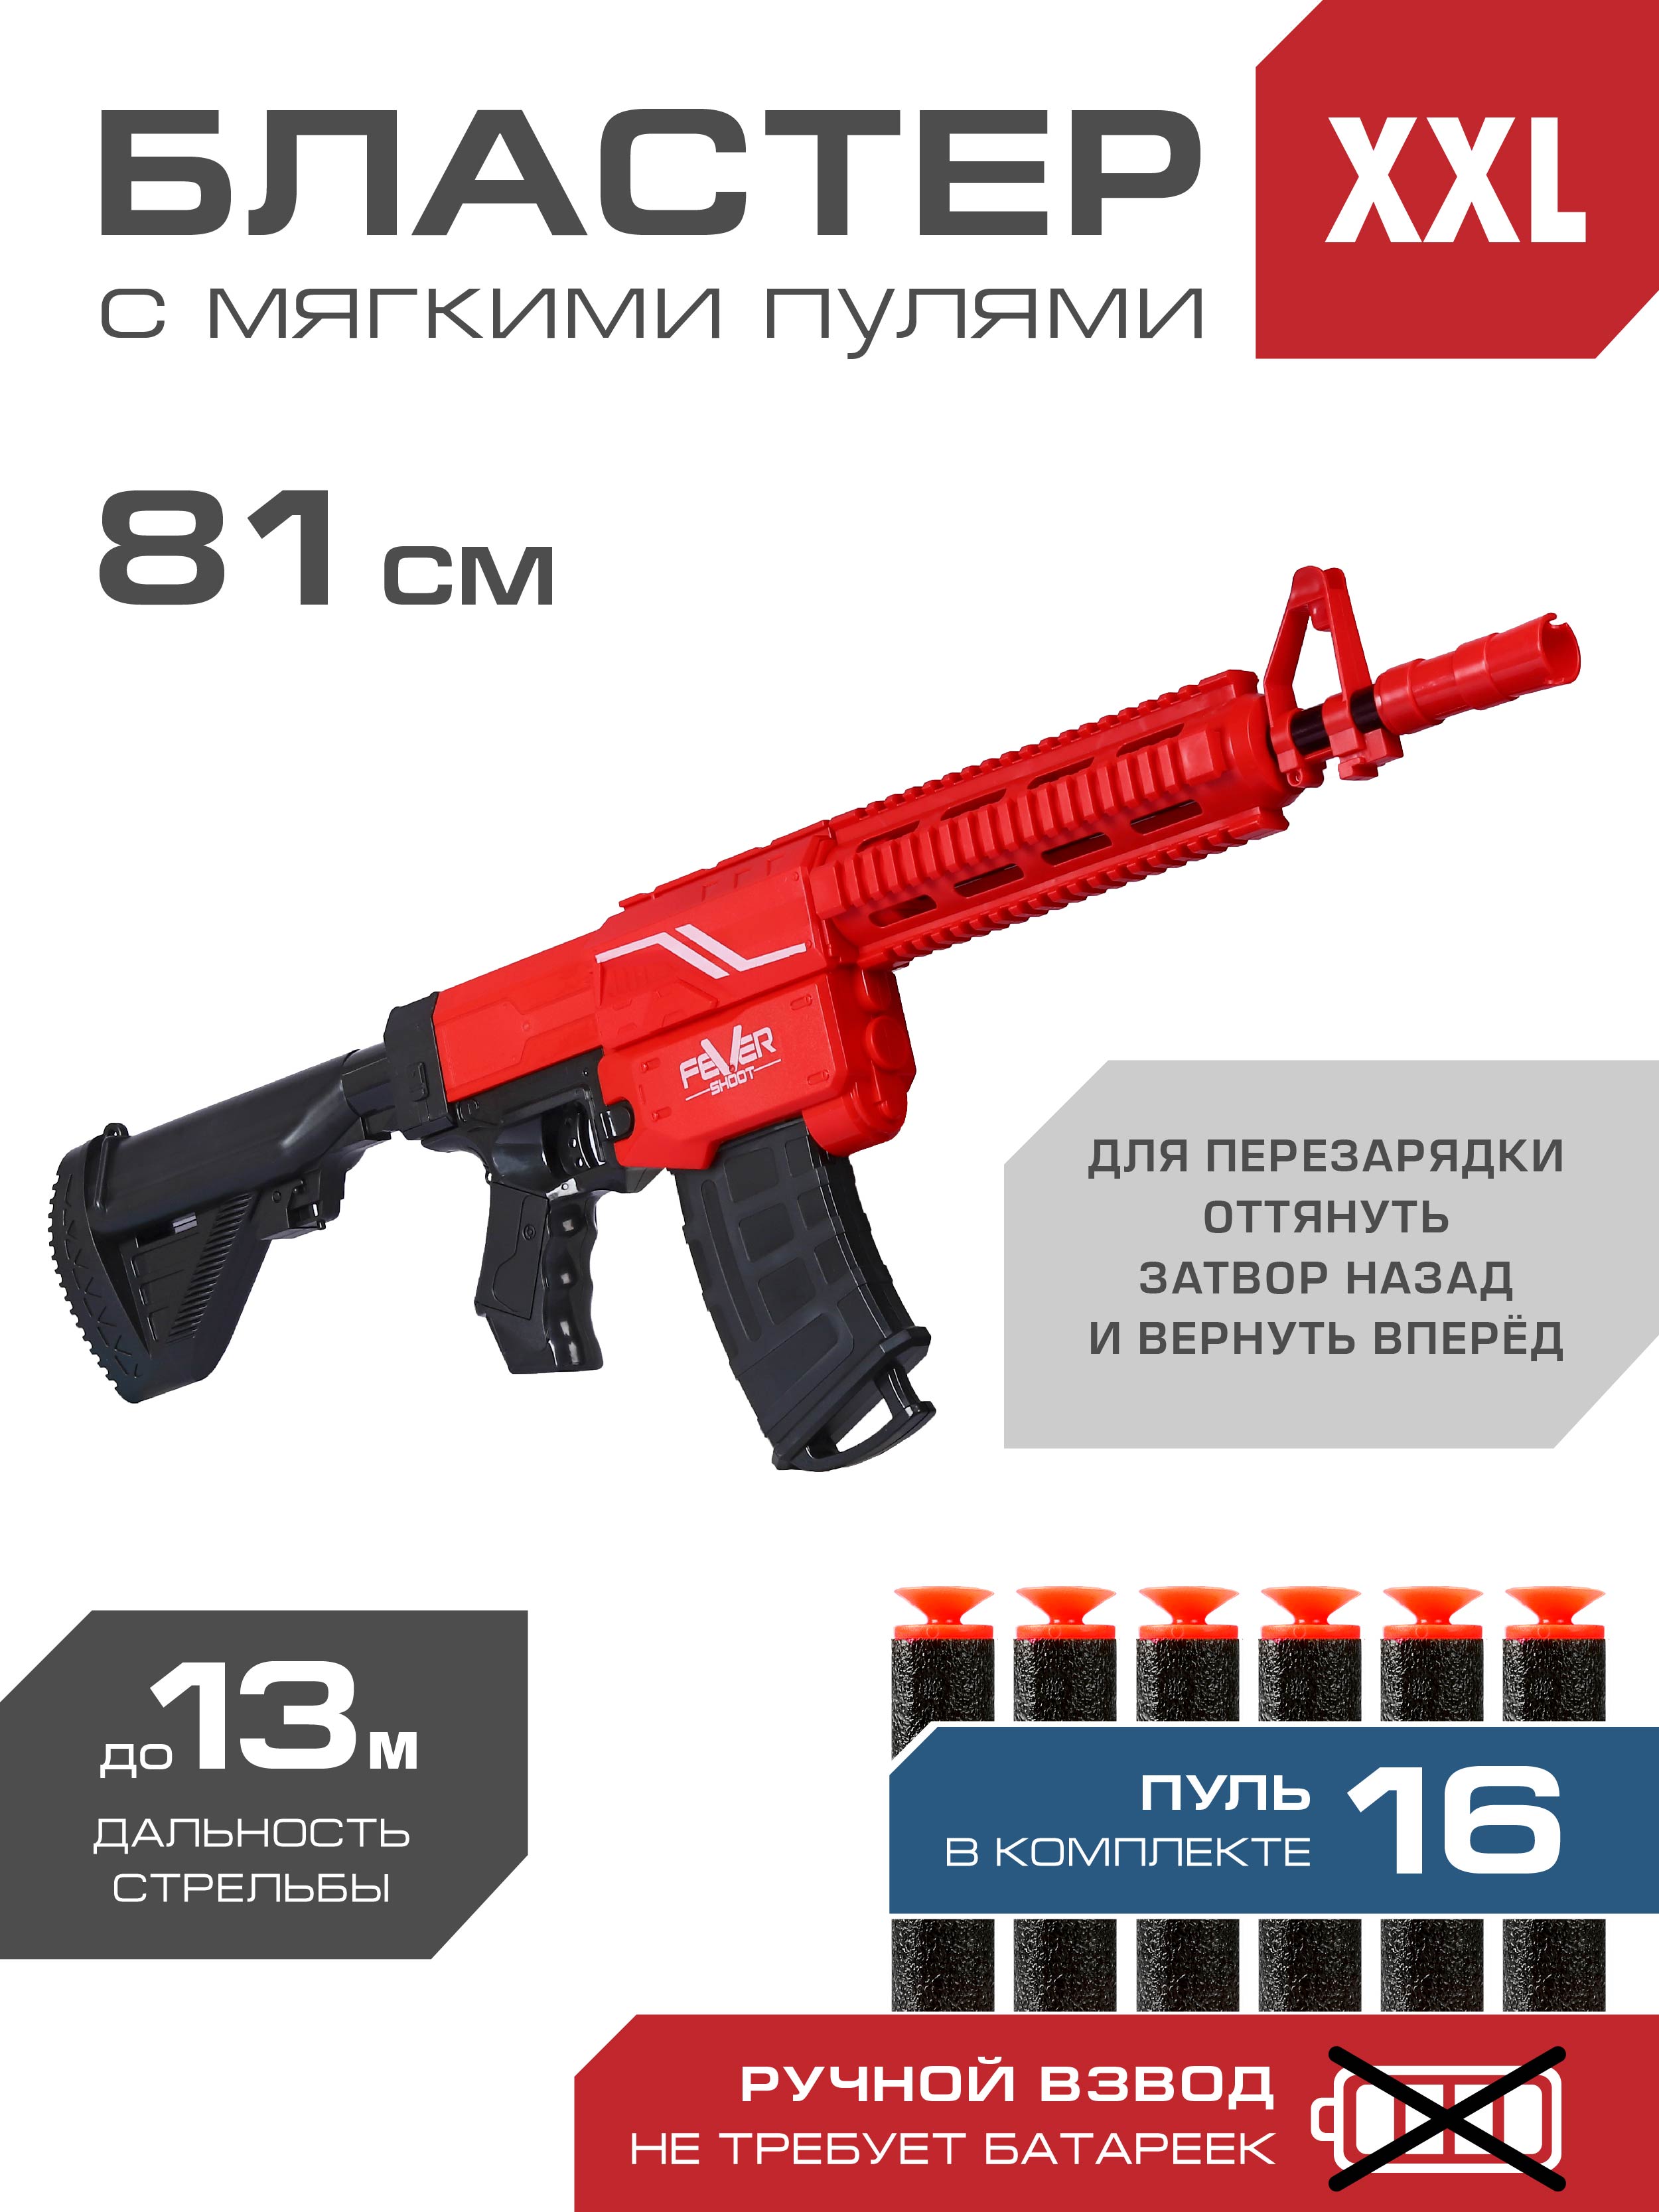 Детское игрушечное оружие Бластер, ручной взвод, 16 пуль в комплекте, JB0211250